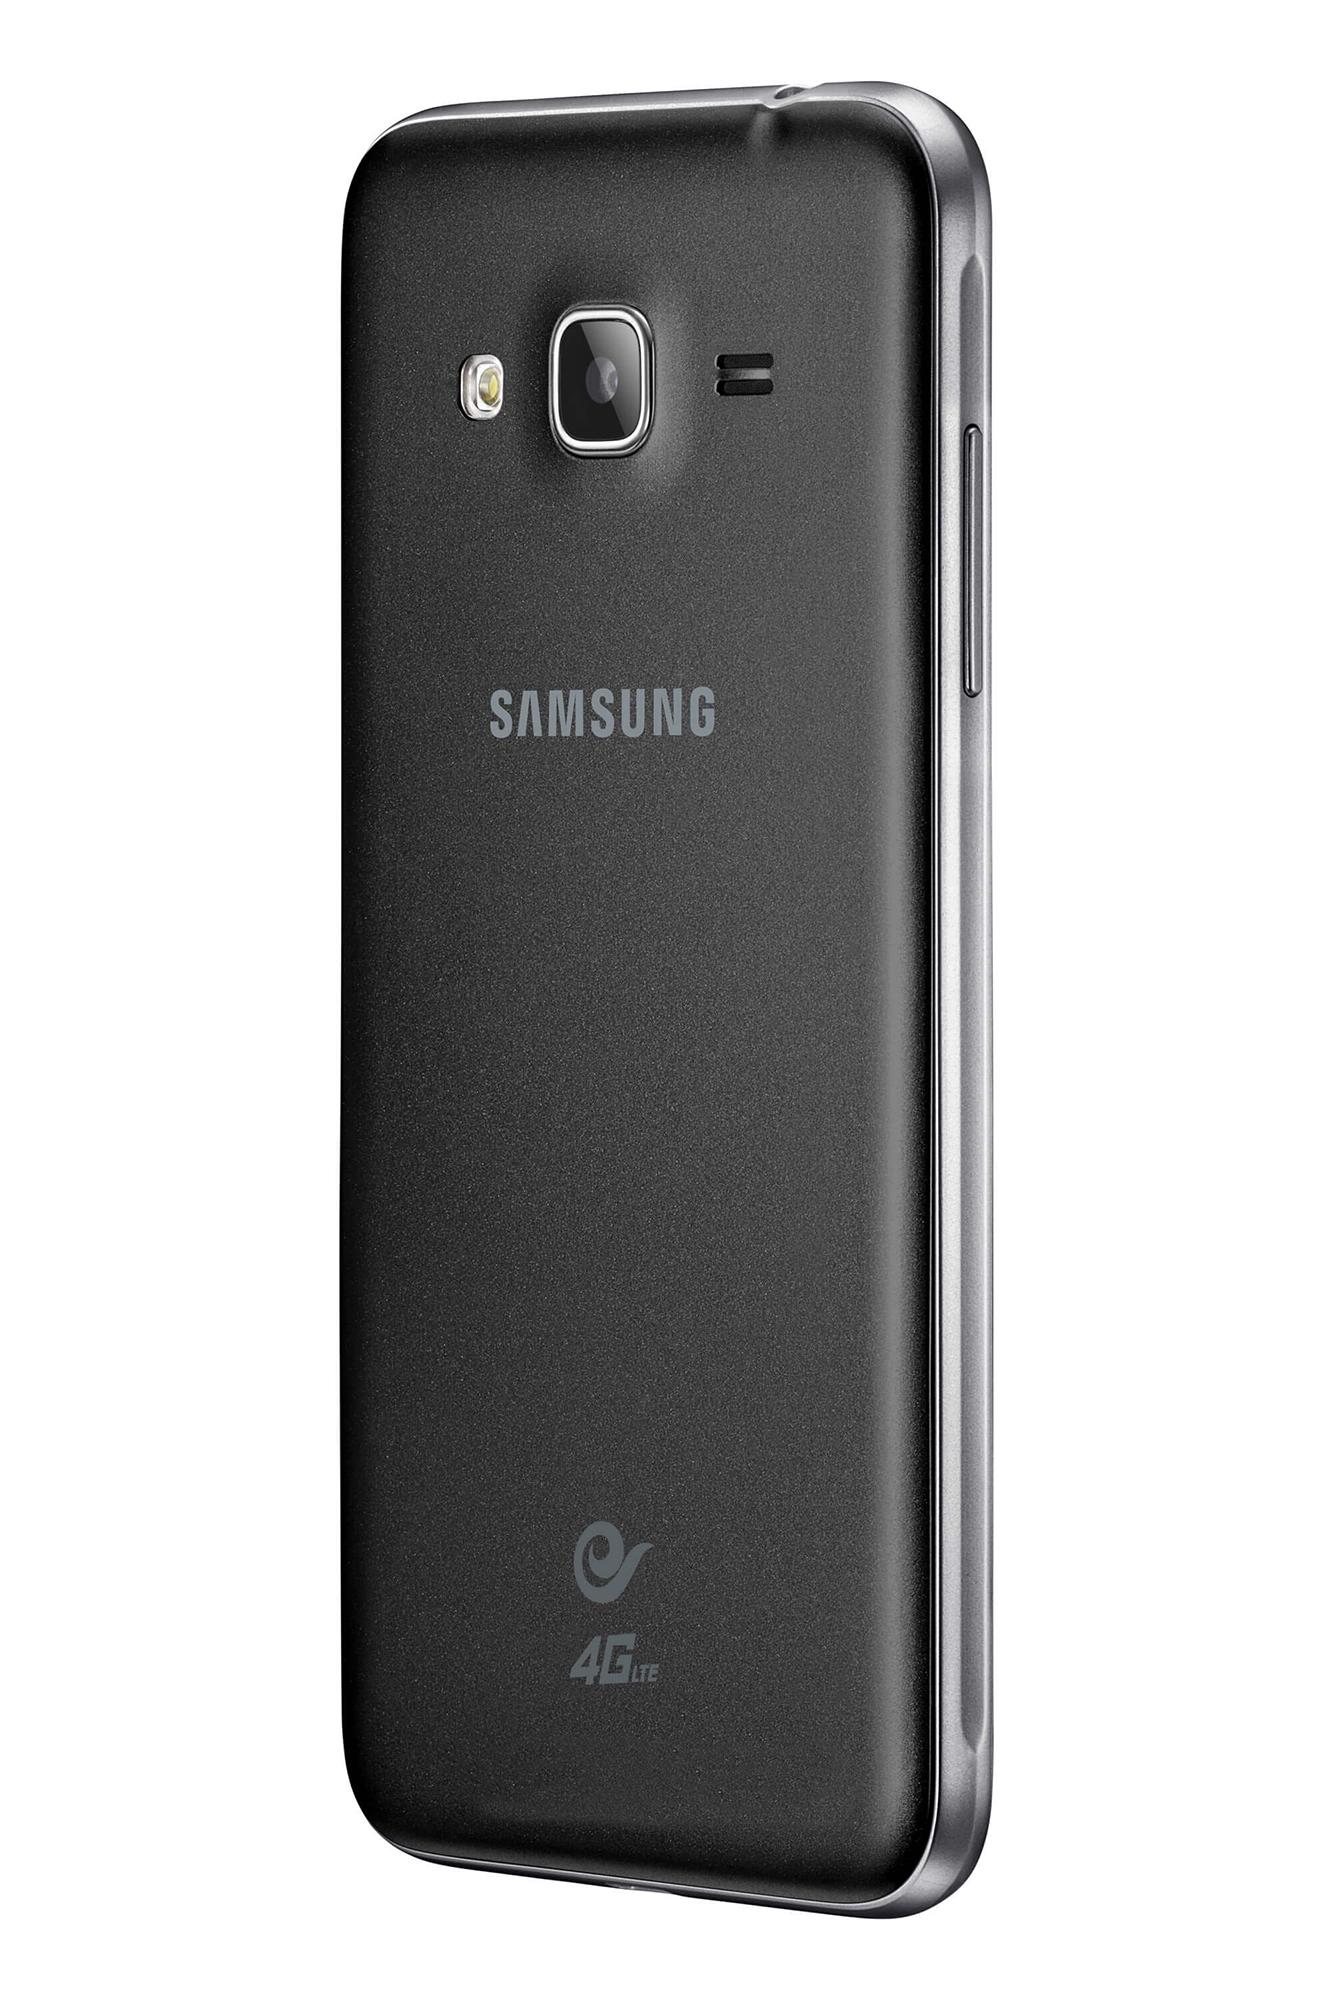 Samsung Galaxy J3 versión 2016 vista trasera en color negro